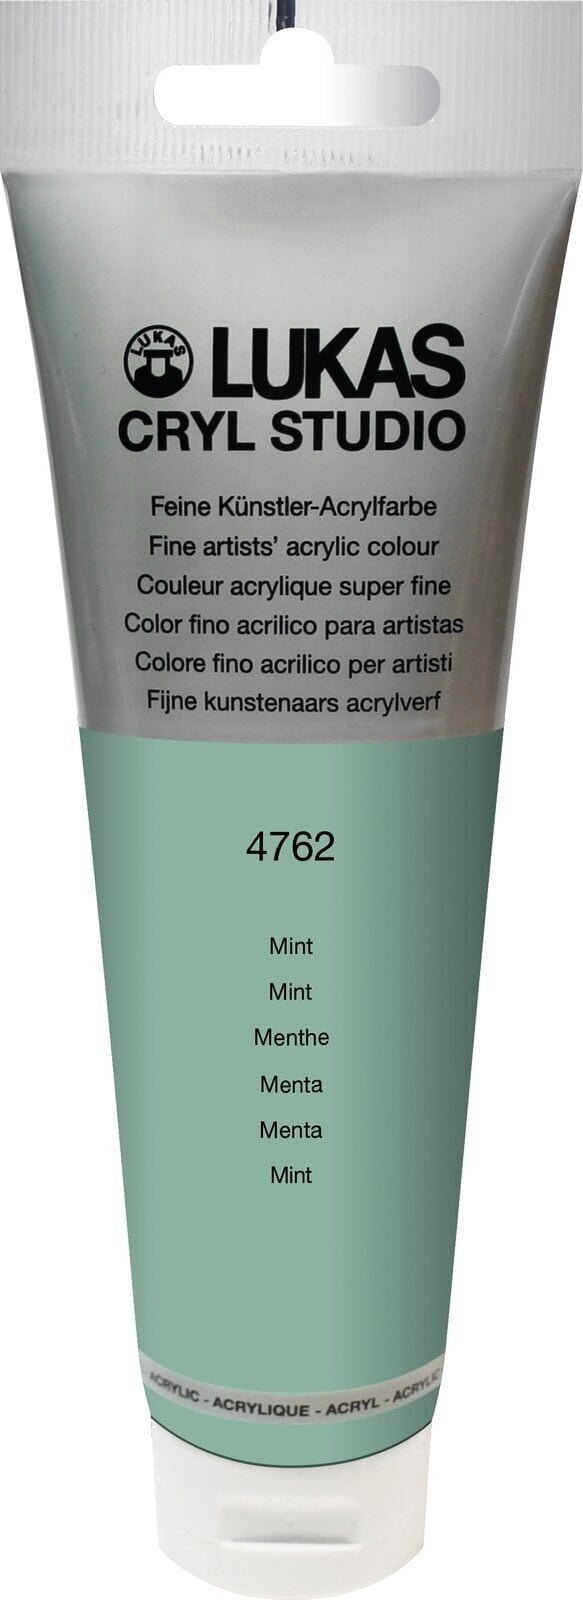 Tinta acrílica Lukas Cryl Studio Acrylic Paint Plastic Tube Tinta acrílica Mint 125 ml 1 un.